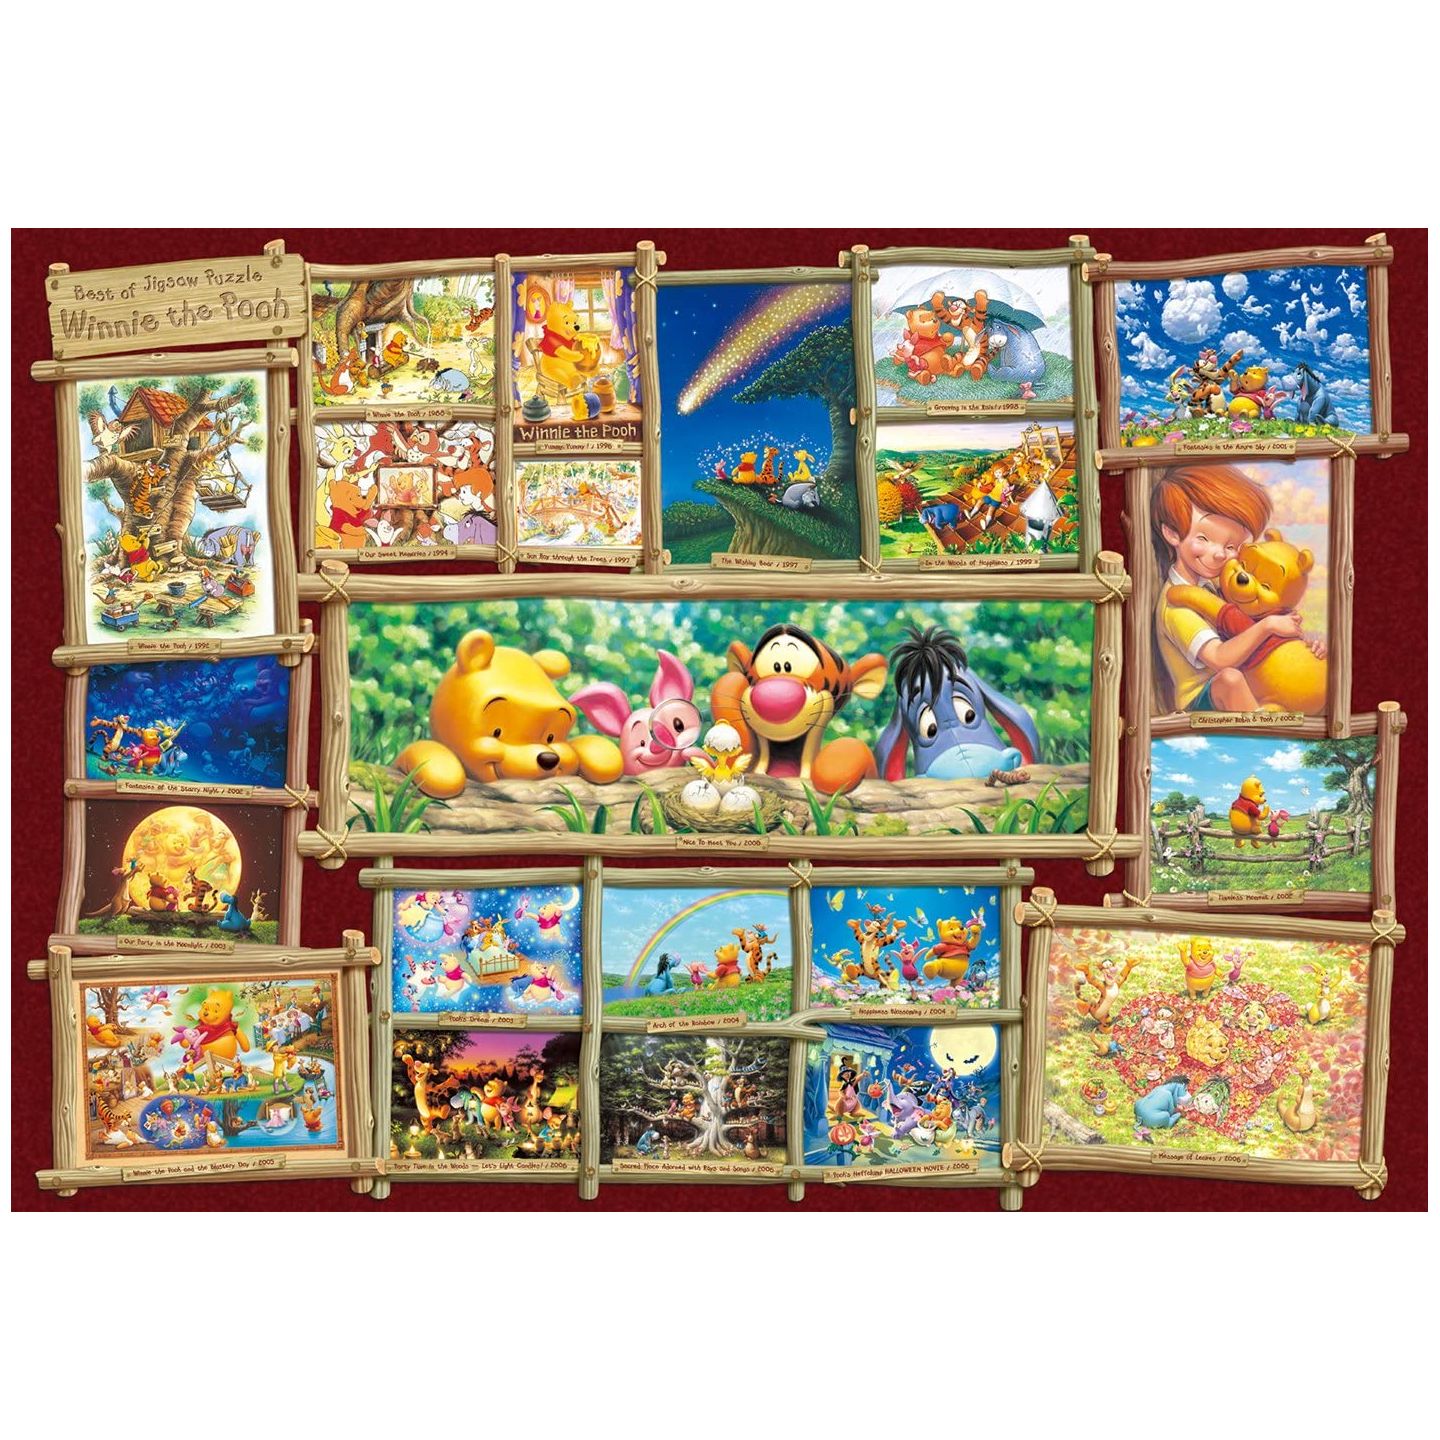 TENYO - DISNEY Winnie the Pooh - 2000 Piece Jigsaw Puzzle DG-2000-529